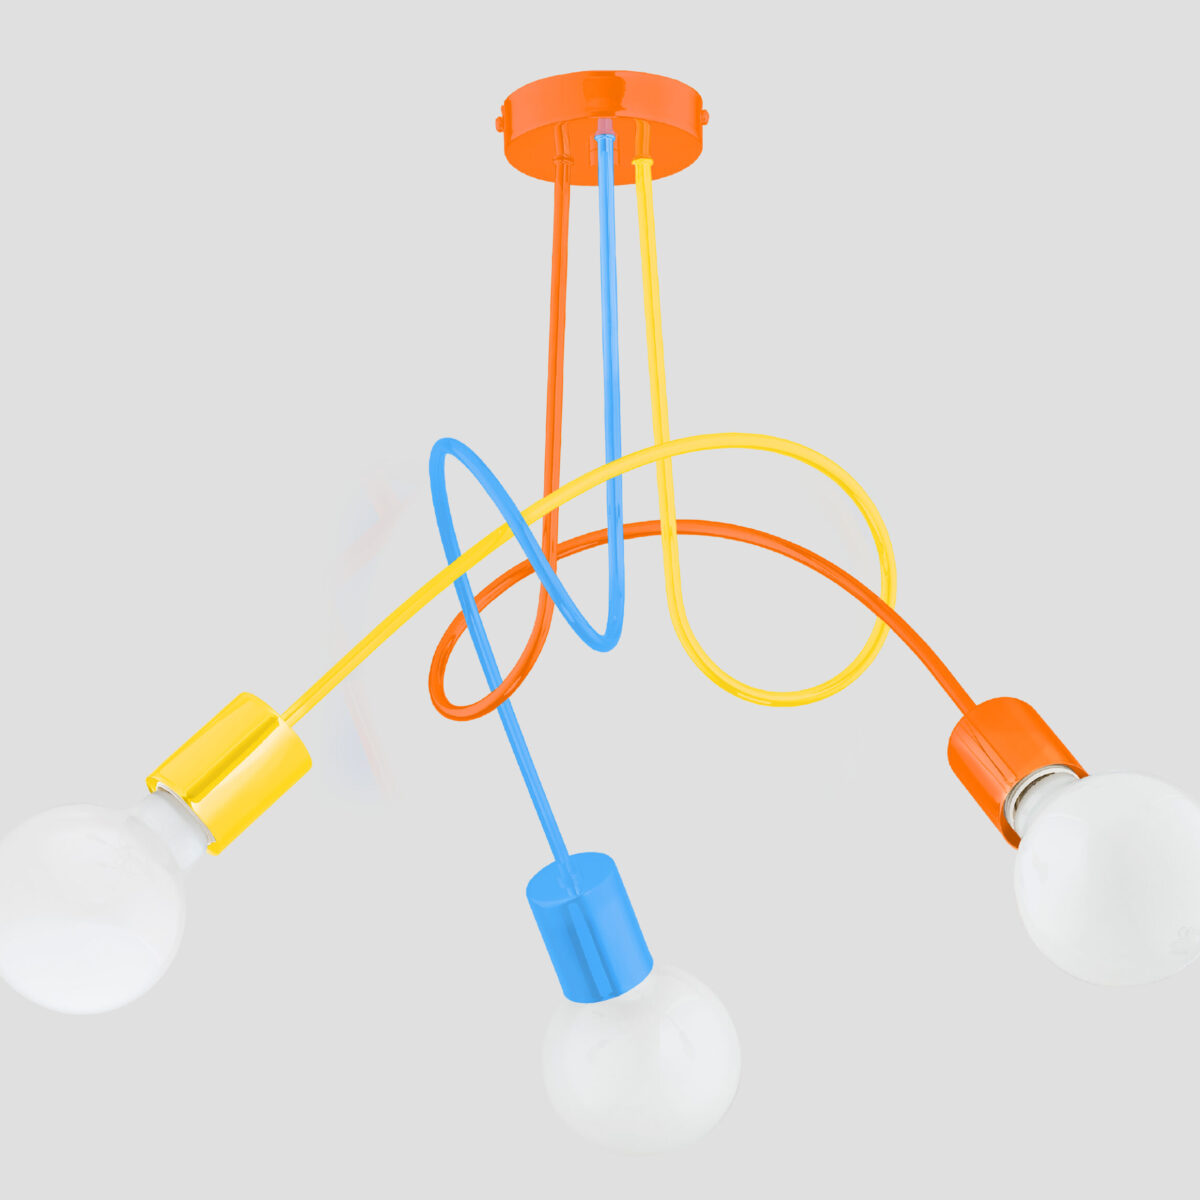 Lampa wisząca 3 punktowa wykonana z metalu w kolorach niebieskim, pomarańczowym i żółtym.